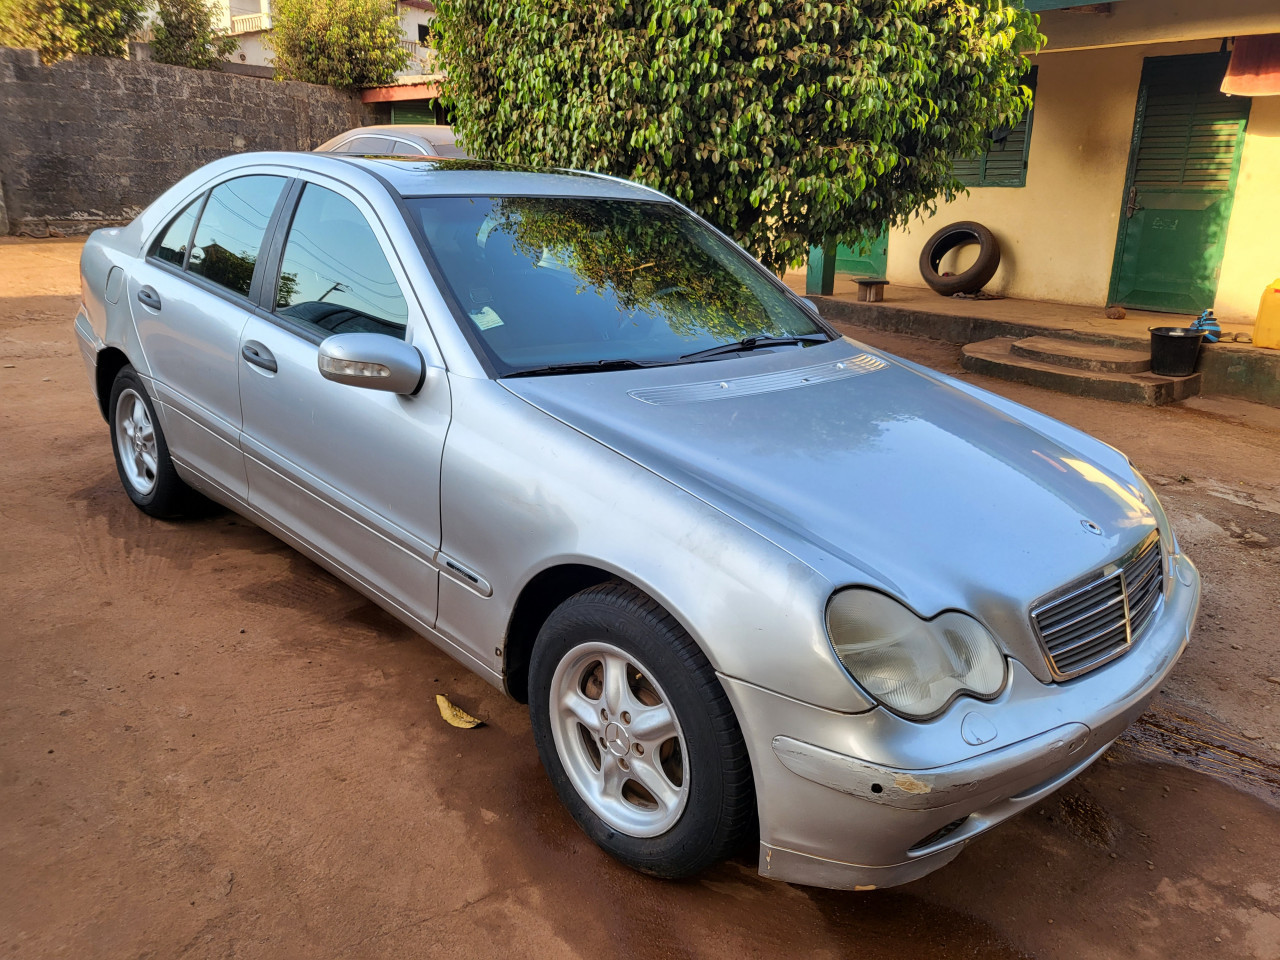 Merdeces-Benz Classe C, Voitures, Conakry